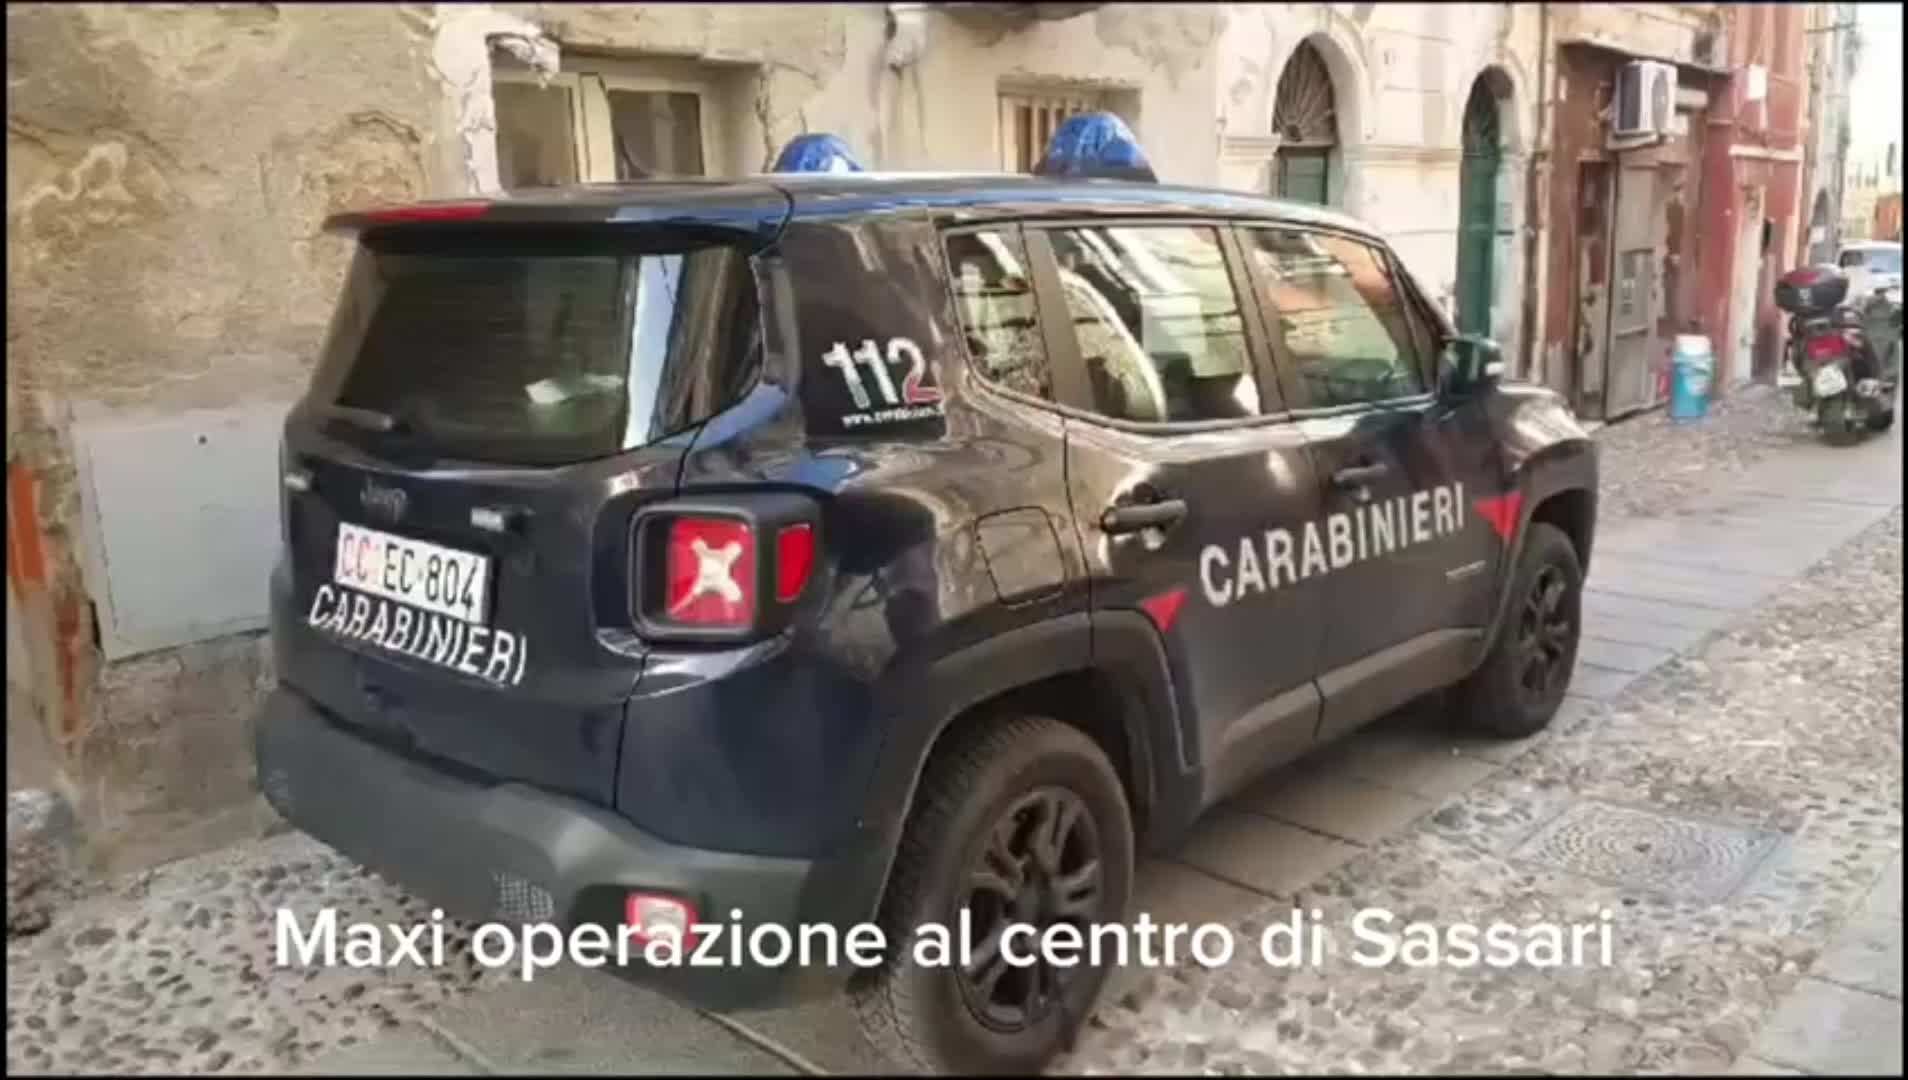 Maxi operazione nel centro storico di Sassari, il sindaco Nanni Campus: «Ecco la risposta delle istituzioni»